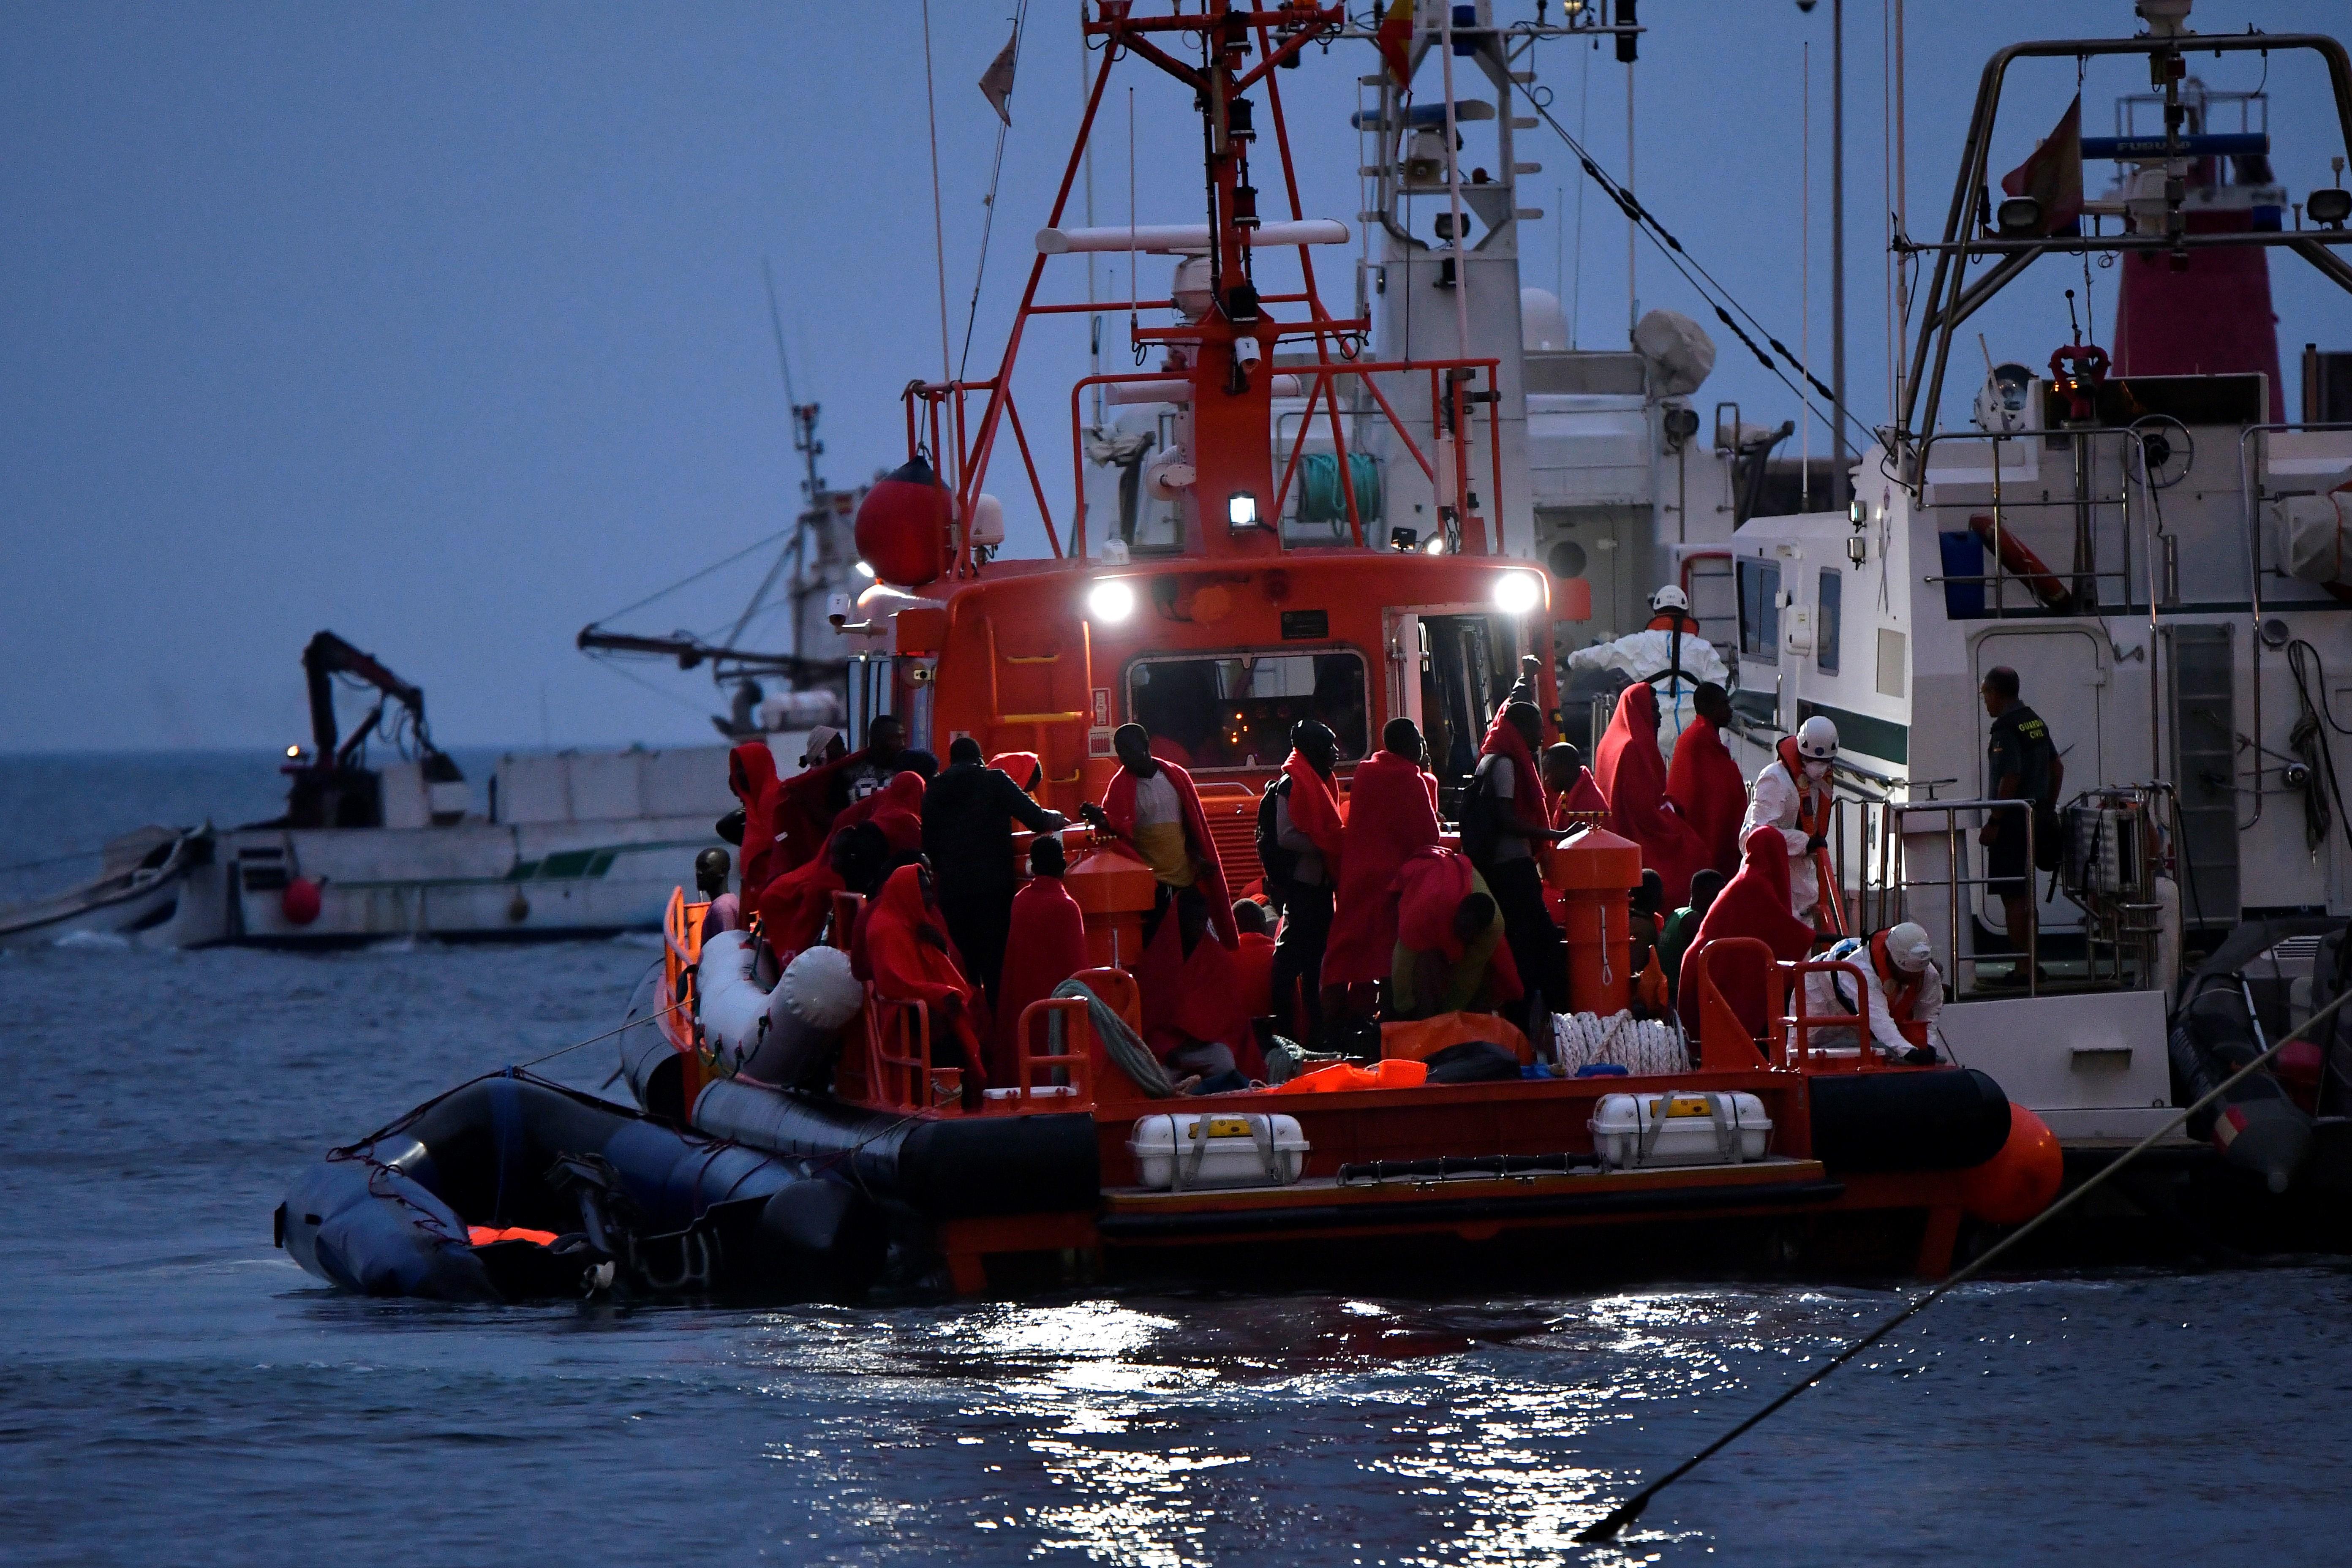 Salvamento Maritimo y Guardia Civil trasladan a tripulantes de pateras rescatadas en el Mar de Alborán. Fuente: EFE Archivo